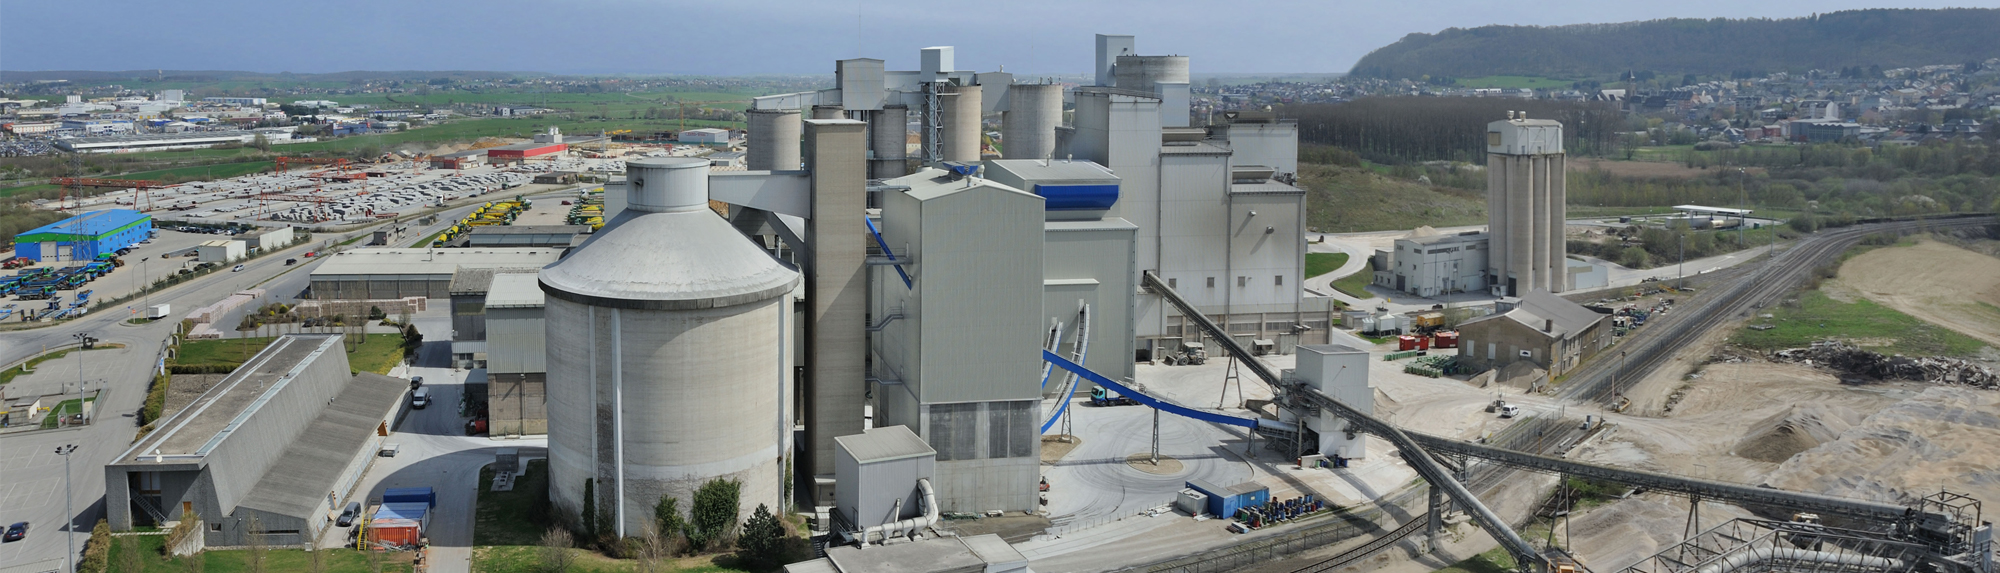 Stabilimento di Esch-sur-Alzette - Lussemburgo / Esch-sur-Alzette Plant - Luxembourg